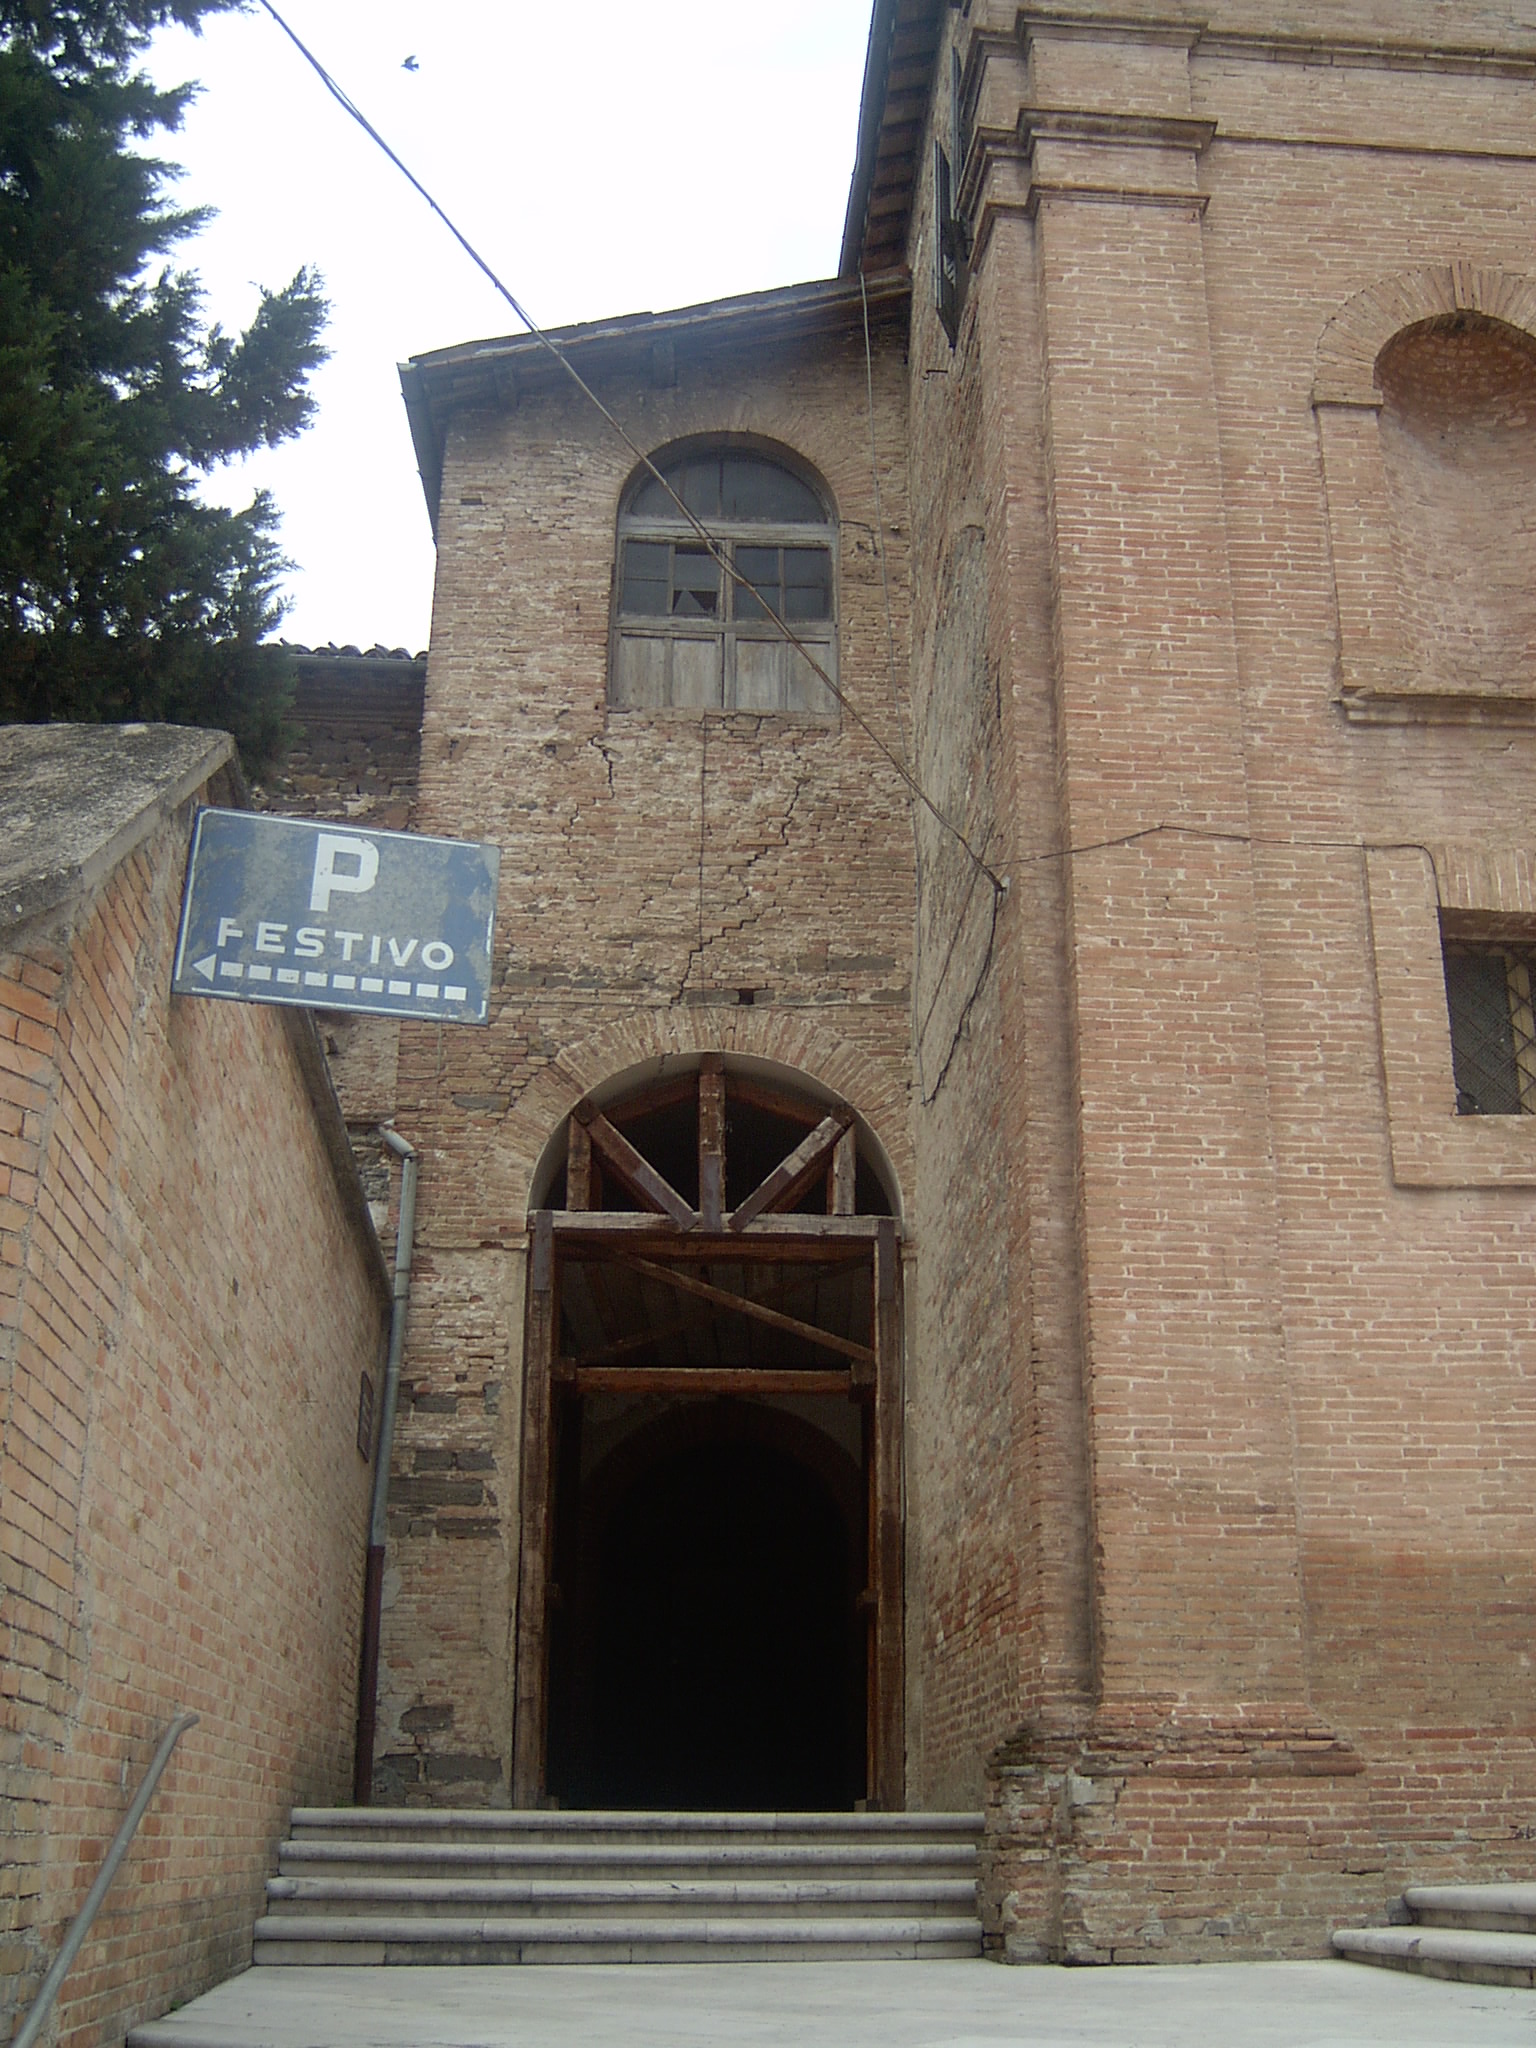 Convento di S. Francesco (convento, francescano (osservanti)) - Matelica (MC) 